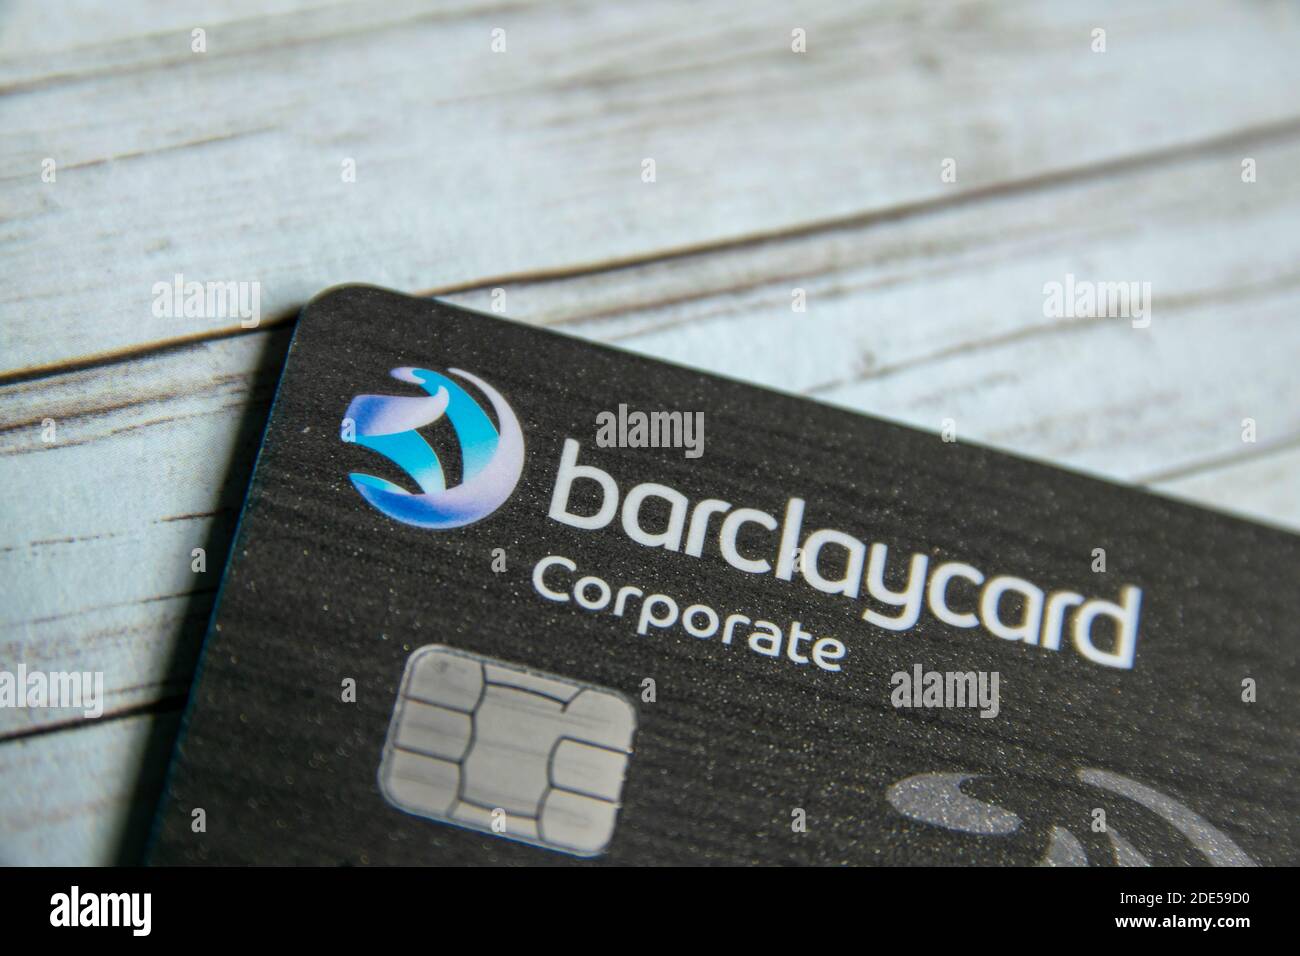 Durham, Royaume-Uni - 7 mai 20 : carte de barclaycard d'entreprise sans contact en plastique.Barclays plc est une banque d'investissement et financière multinationale britannique Banque D'Images